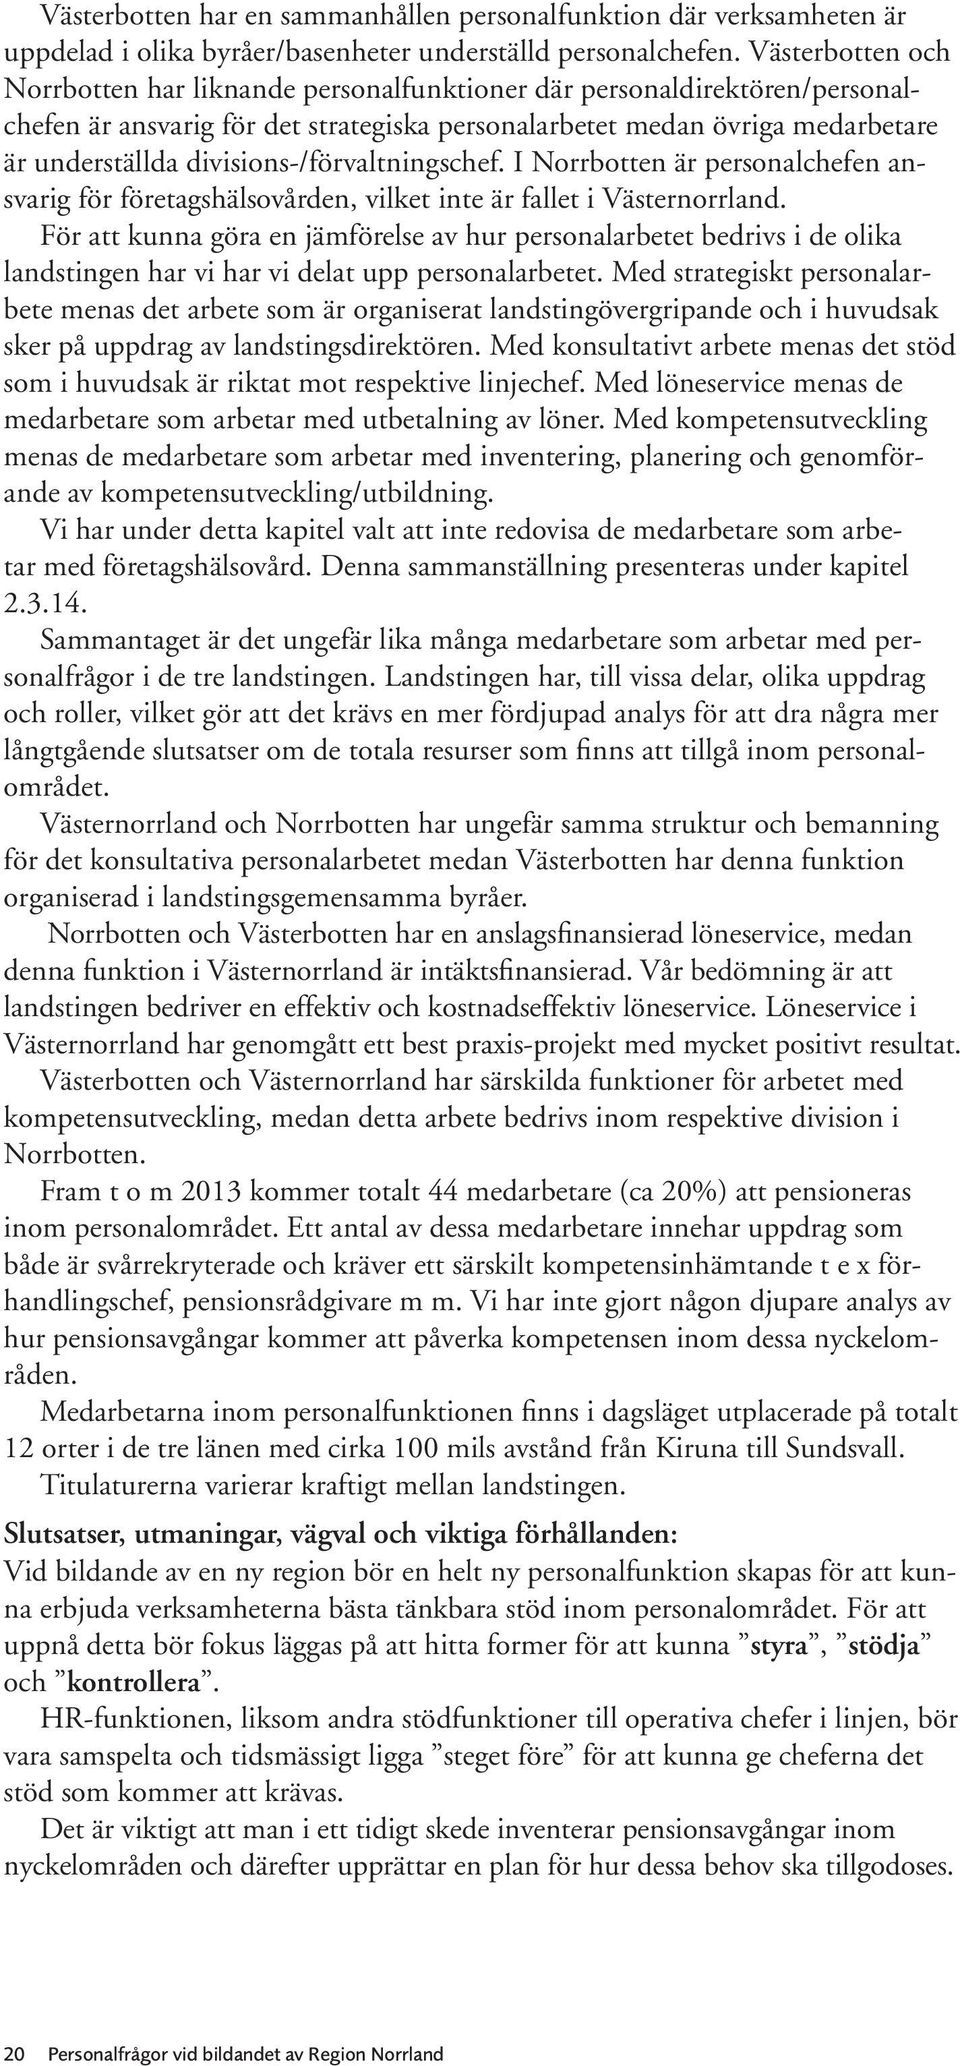 divisions-/förvaltningschef. I Norrbotten är personalchefen ansvarig för företagshälsovården, vilket inte är fallet i Västernorrland.